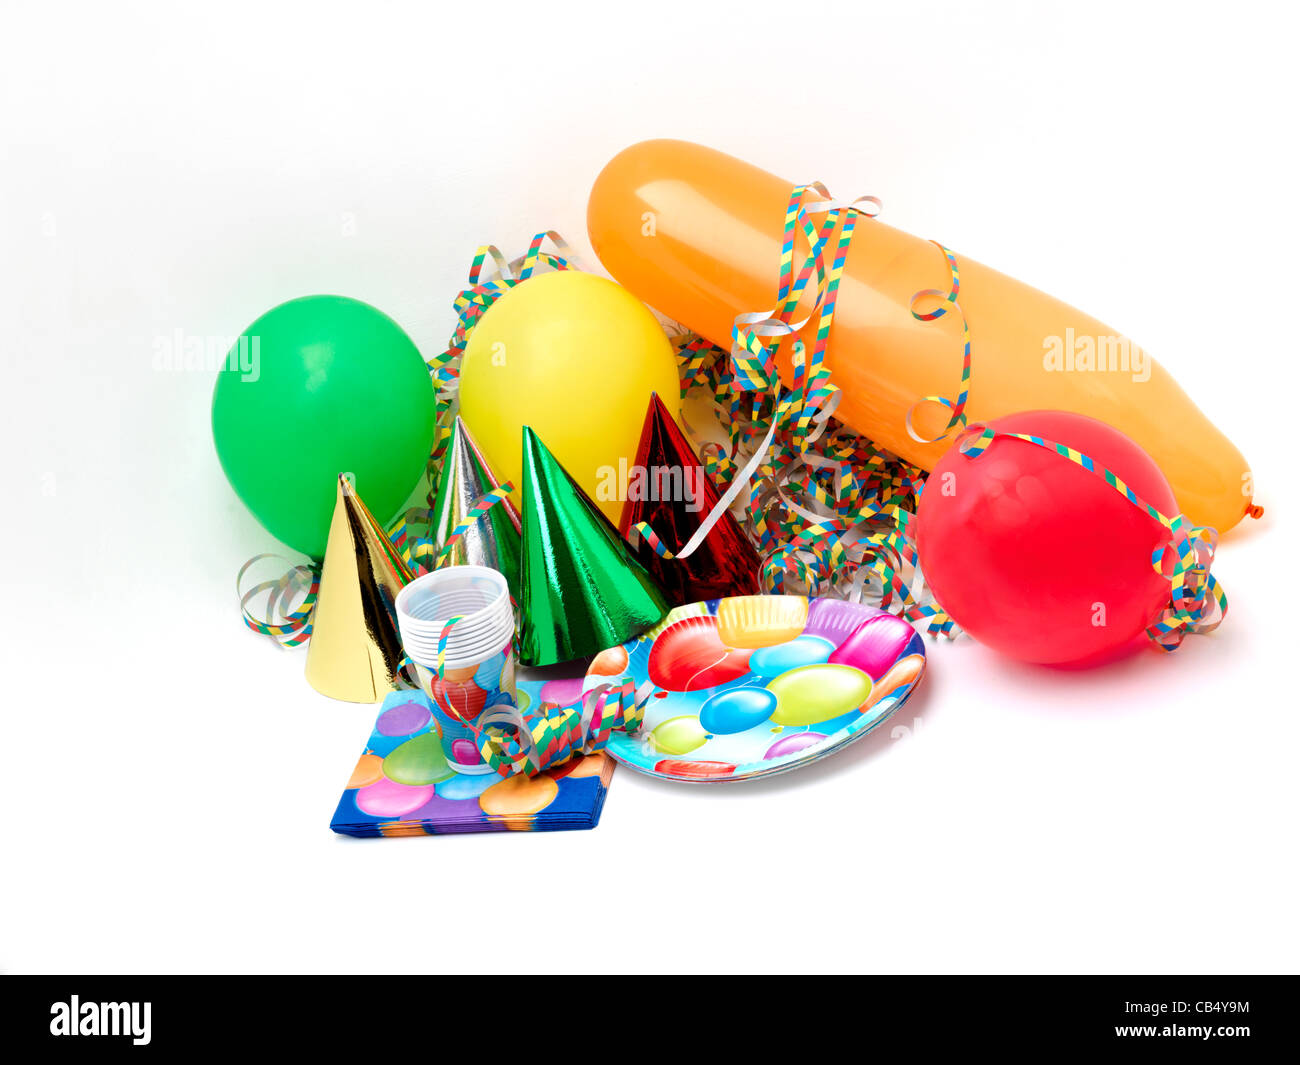 Party-Utensilien - Ballons, Luftschlangen, Partyhüte, Servietten,  Pappteller und Becher Stockfotografie - Alamy